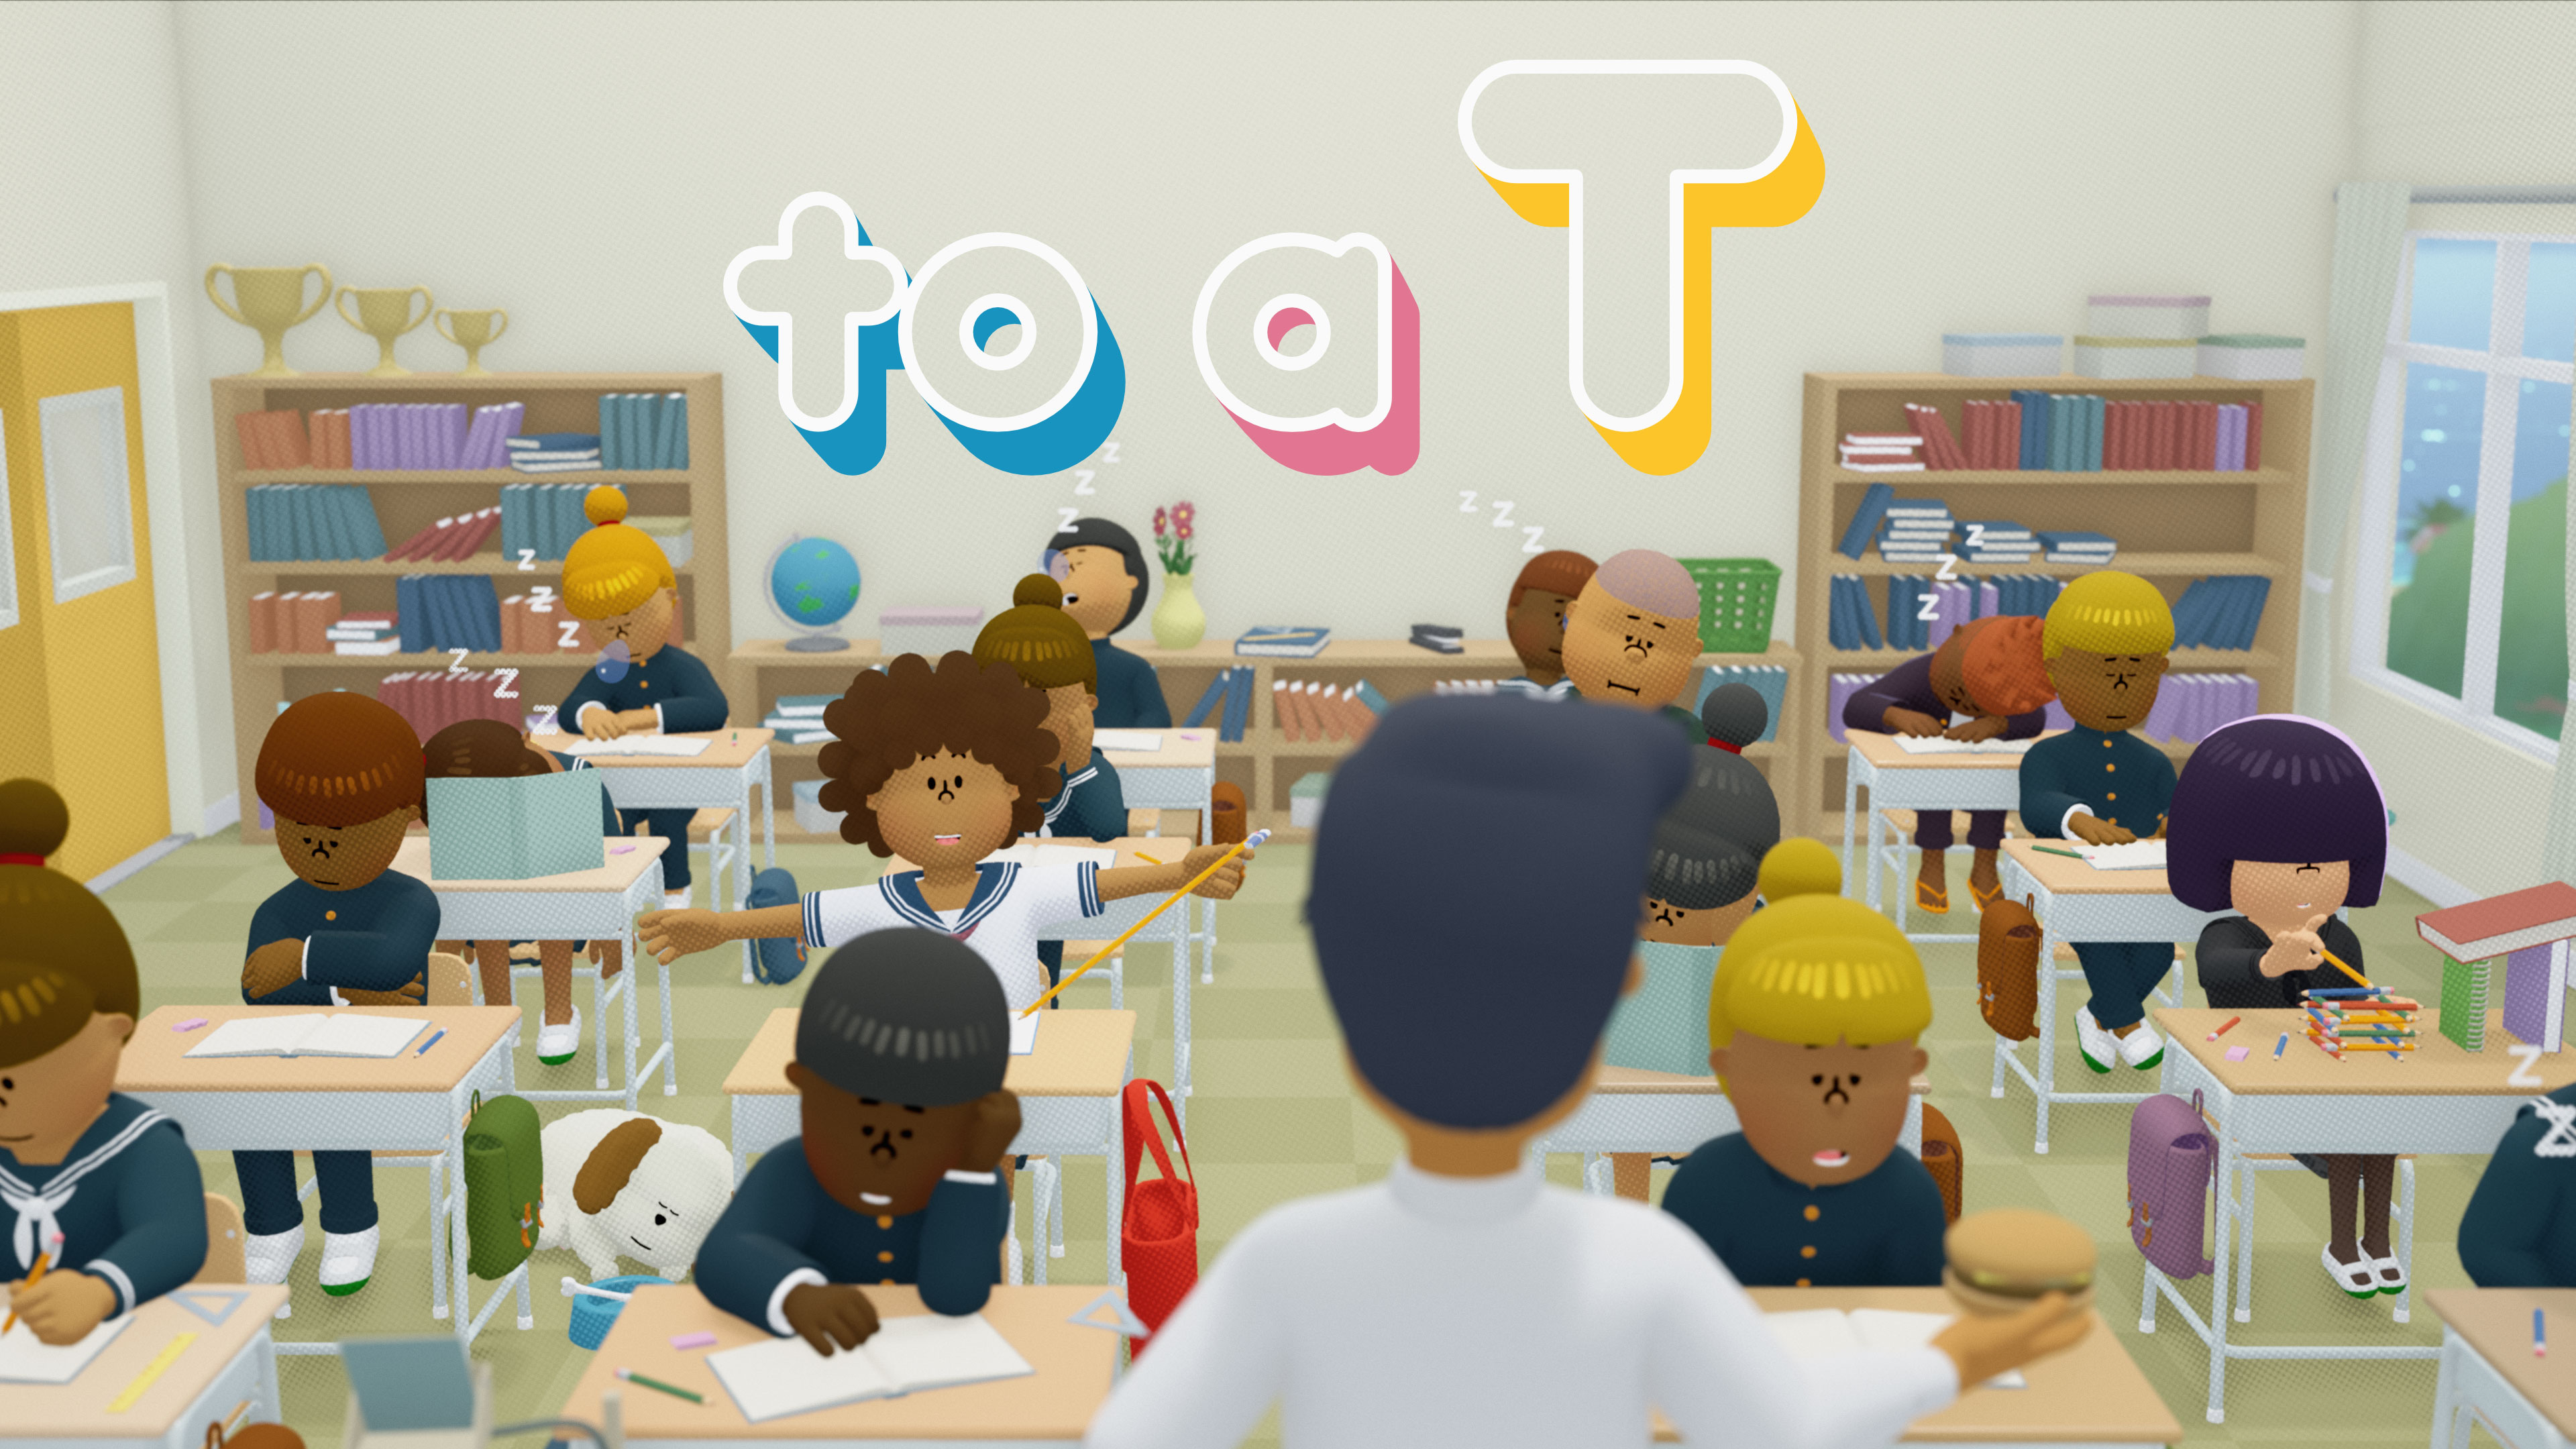 à une illustration en T avec le logo du jeu et des personnages charmants dans une salle de classe